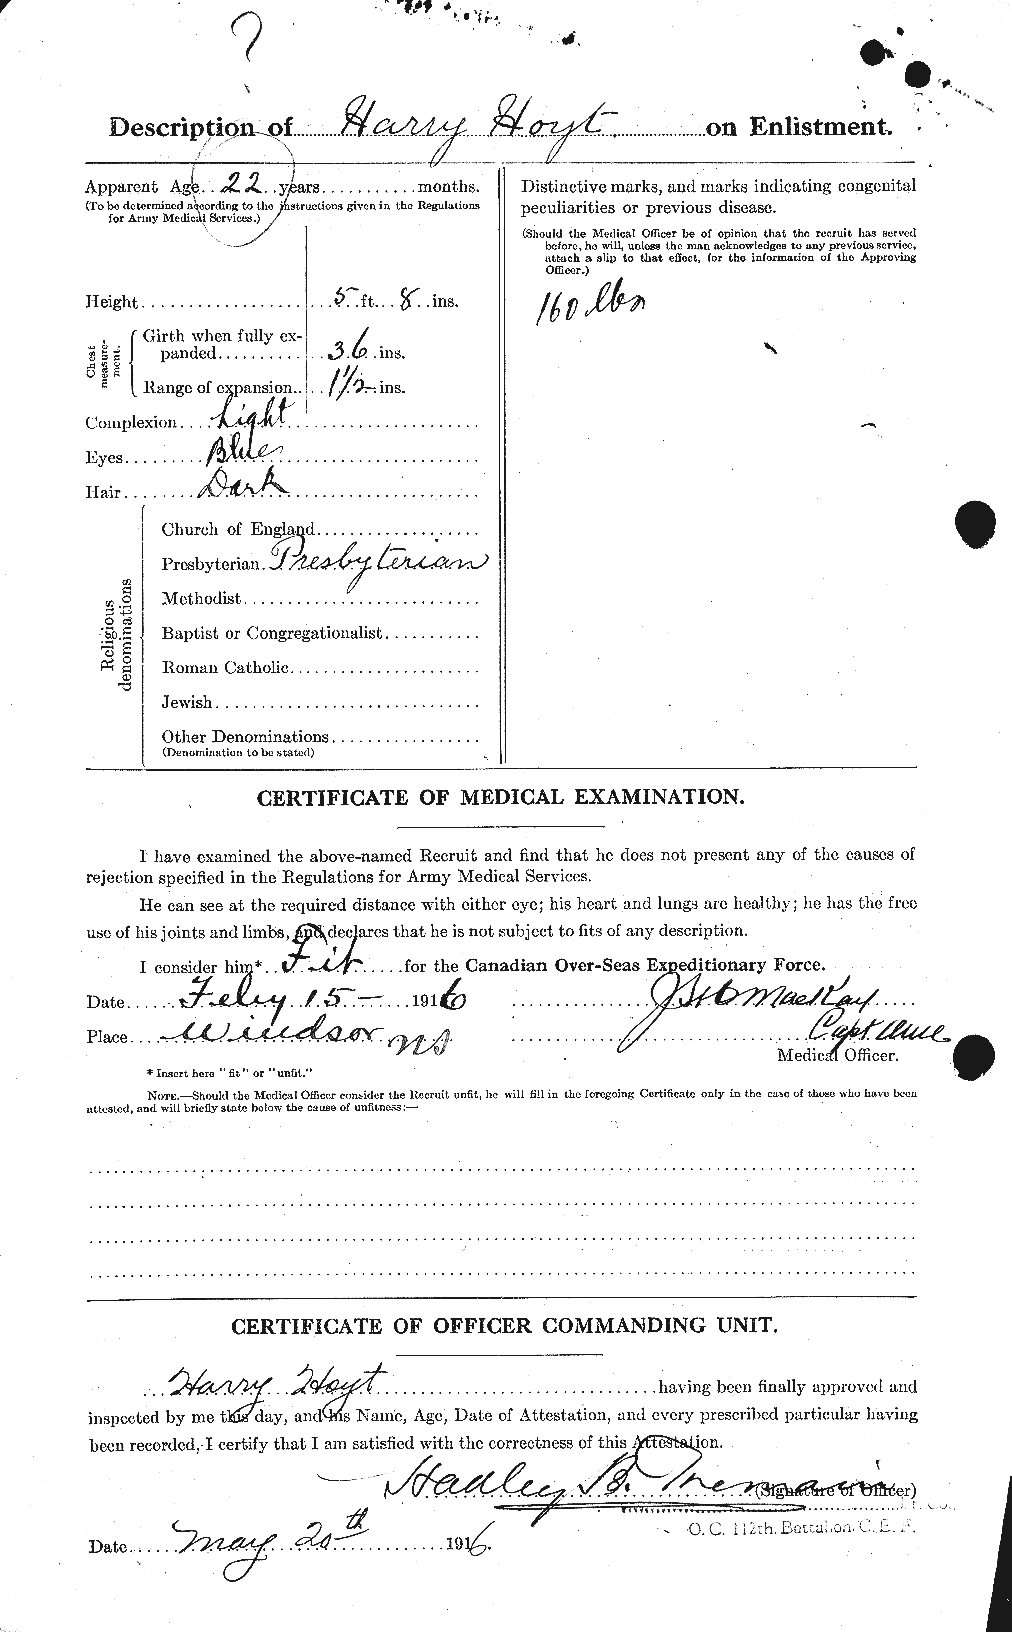 Dossiers du Personnel de la Première Guerre mondiale - CEC 403579b